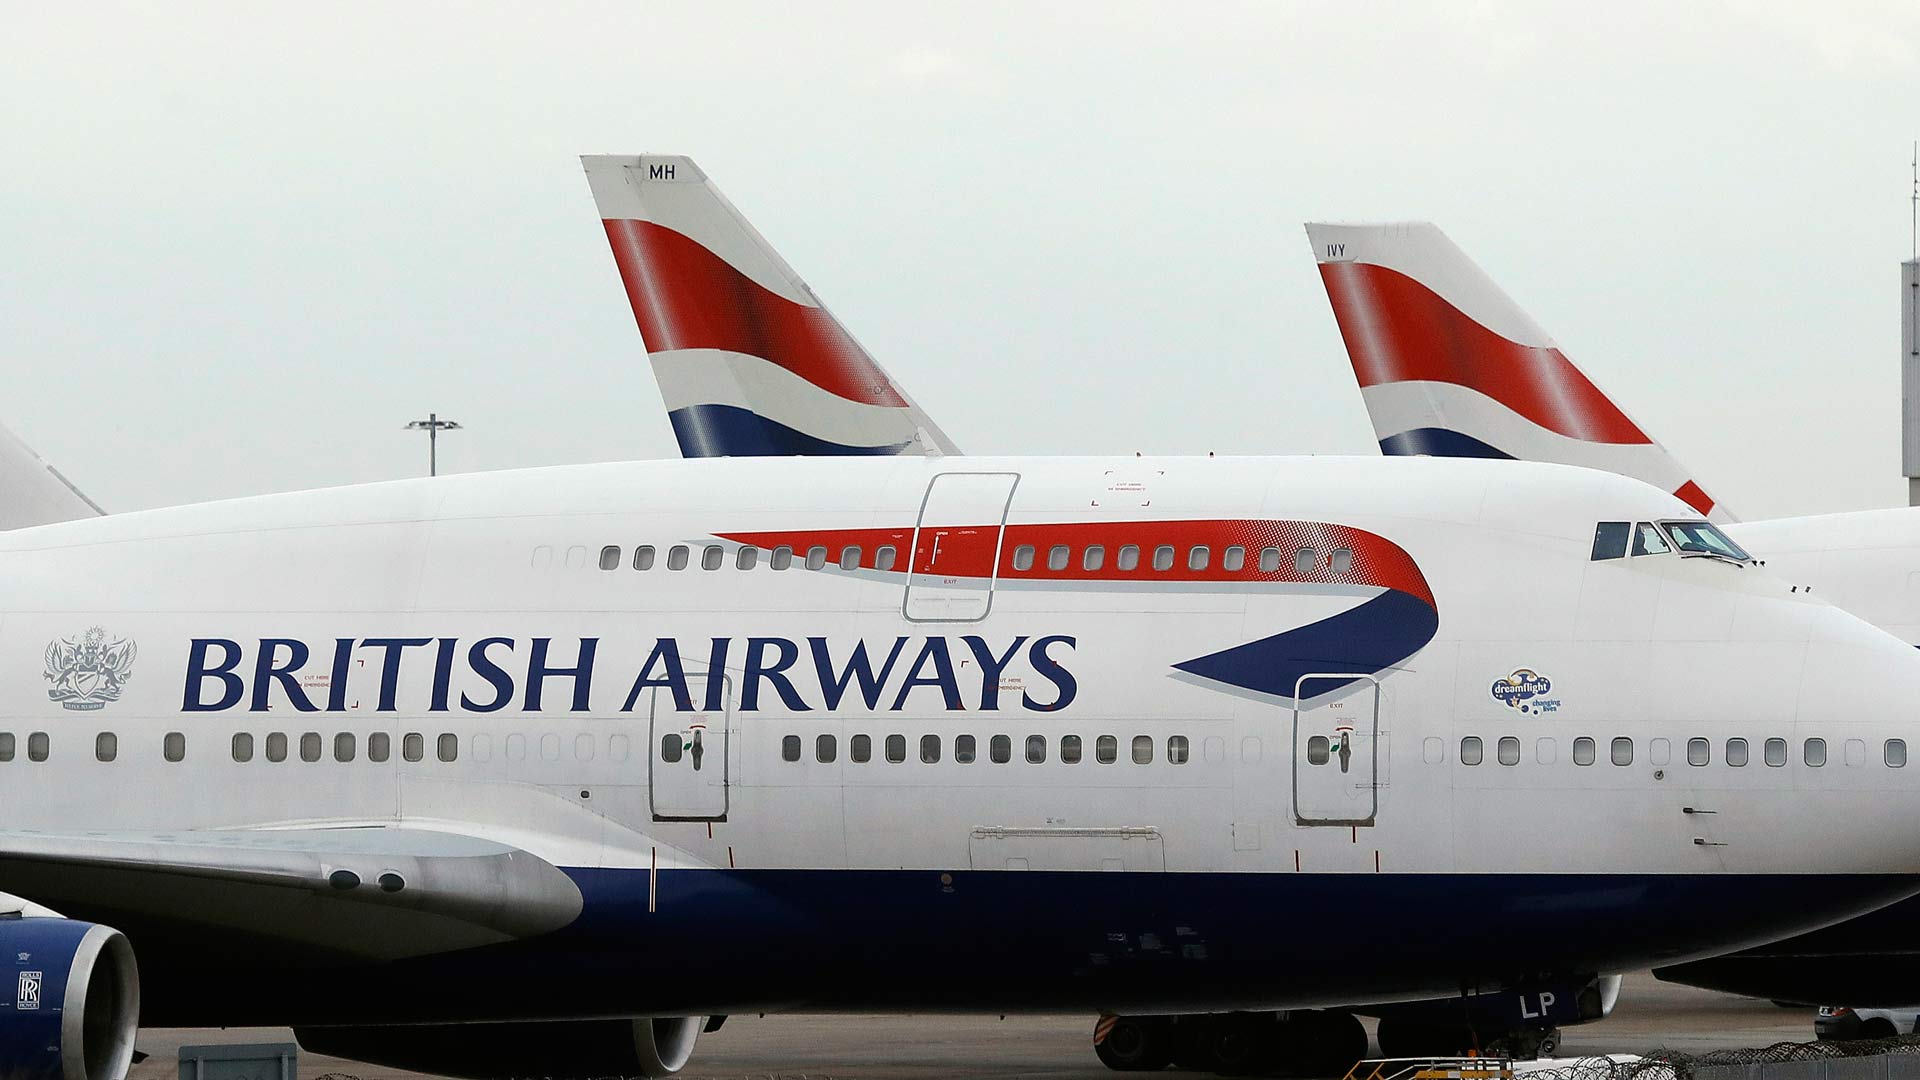 Un vuelo de British Airways con destino Dusseldorf aterriza en Edimburgo por error